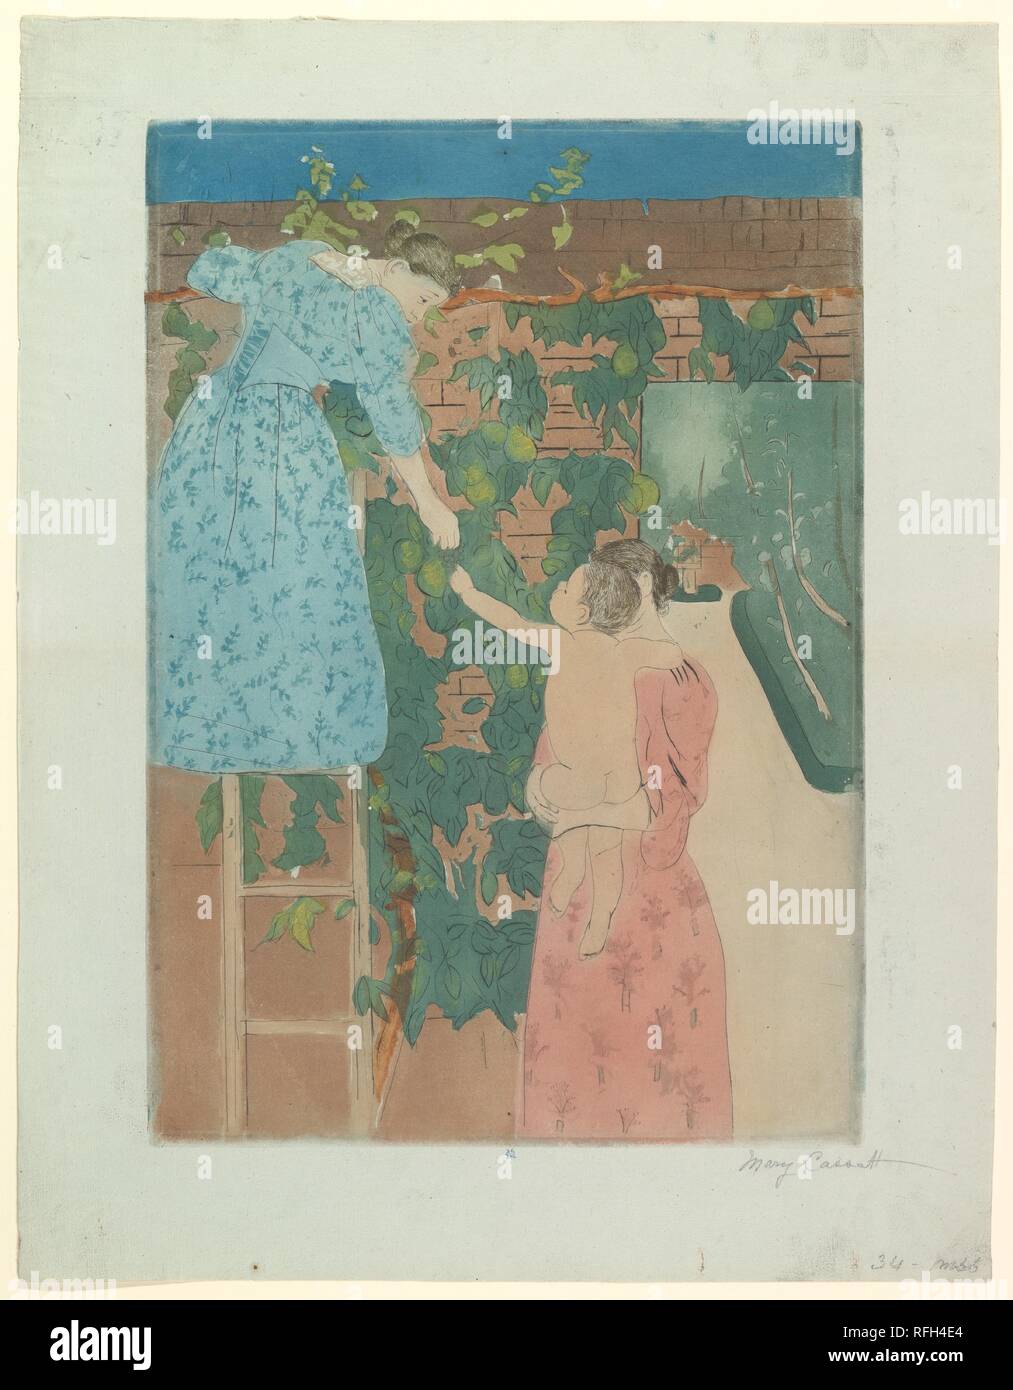 Sammeln von Früchten. Artist: Mary Cassatt (Amerikanische, Pittsburgh, Pennsylvania 1844-1926 Le Mesnil-Théribus herum, Oise). Abmessungen: Platte: 16 3/4 x 11 11/16 in. (42,5 x 29,7 cm) Blatt: 20 1/2 x 15 7/8 in. (52,1 x 40,3 cm). Datum: Ca. 1893. Museum: Metropolitan Museum of Art, New York, USA. Stockfoto